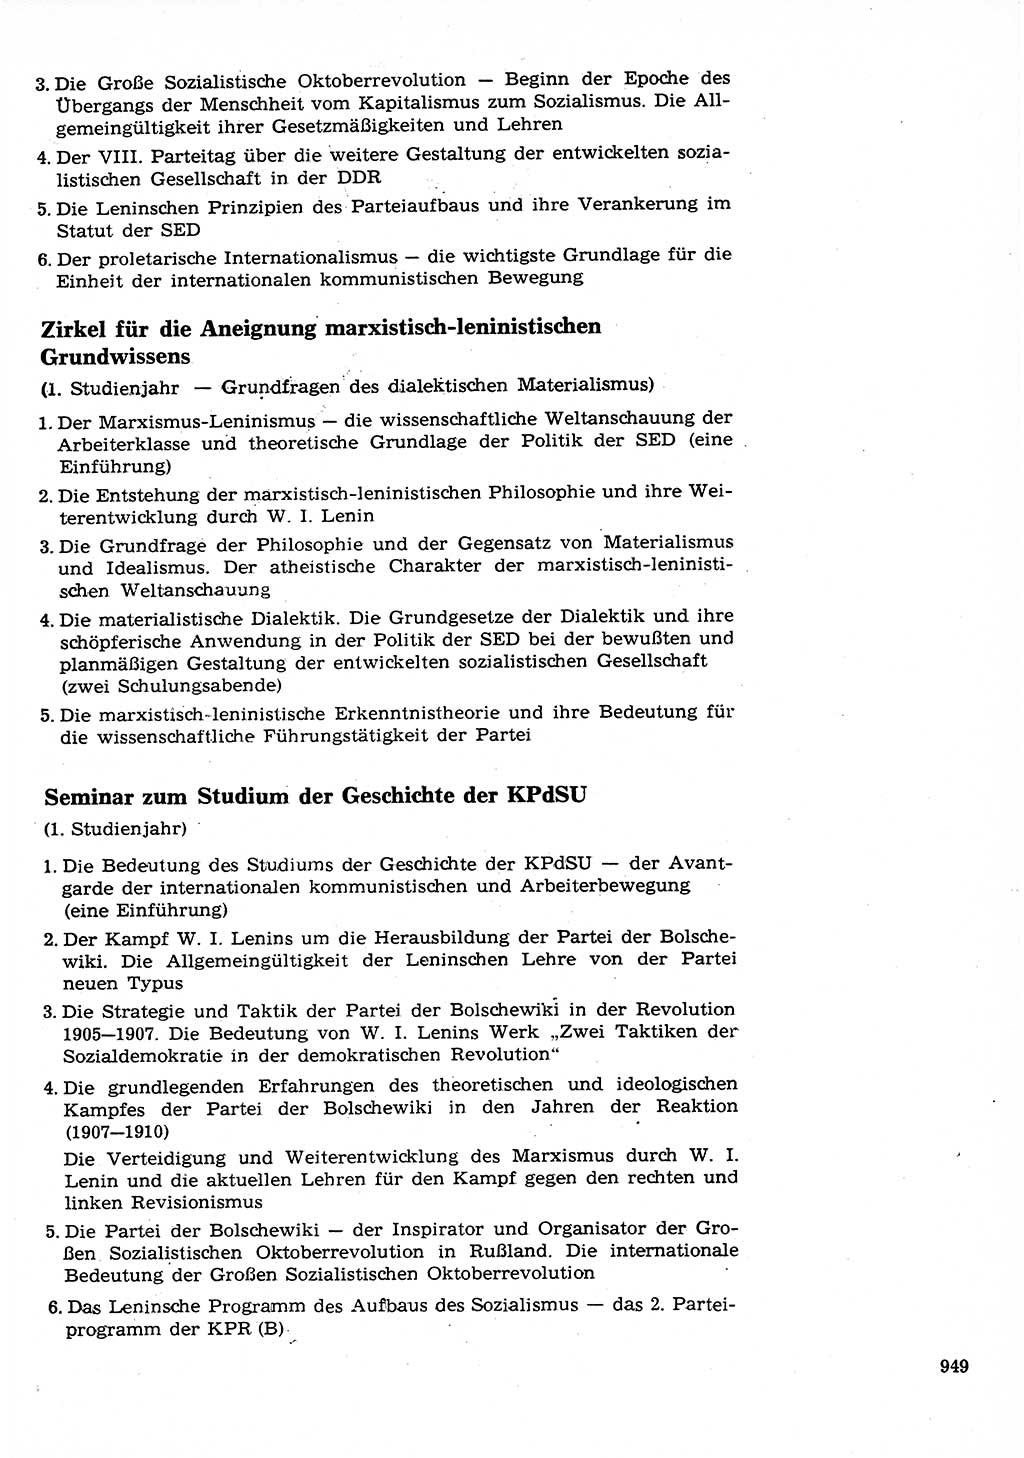 Neuer Weg (NW), Organ des Zentralkomitees (ZK) der SED (Sozialistische Einheitspartei Deutschlands) für Fragen des Parteilebens, 26. Jahrgang [Deutsche Demokratische Republik (DDR)] 1971, Seite 949 (NW ZK SED DDR 1971, S. 949)